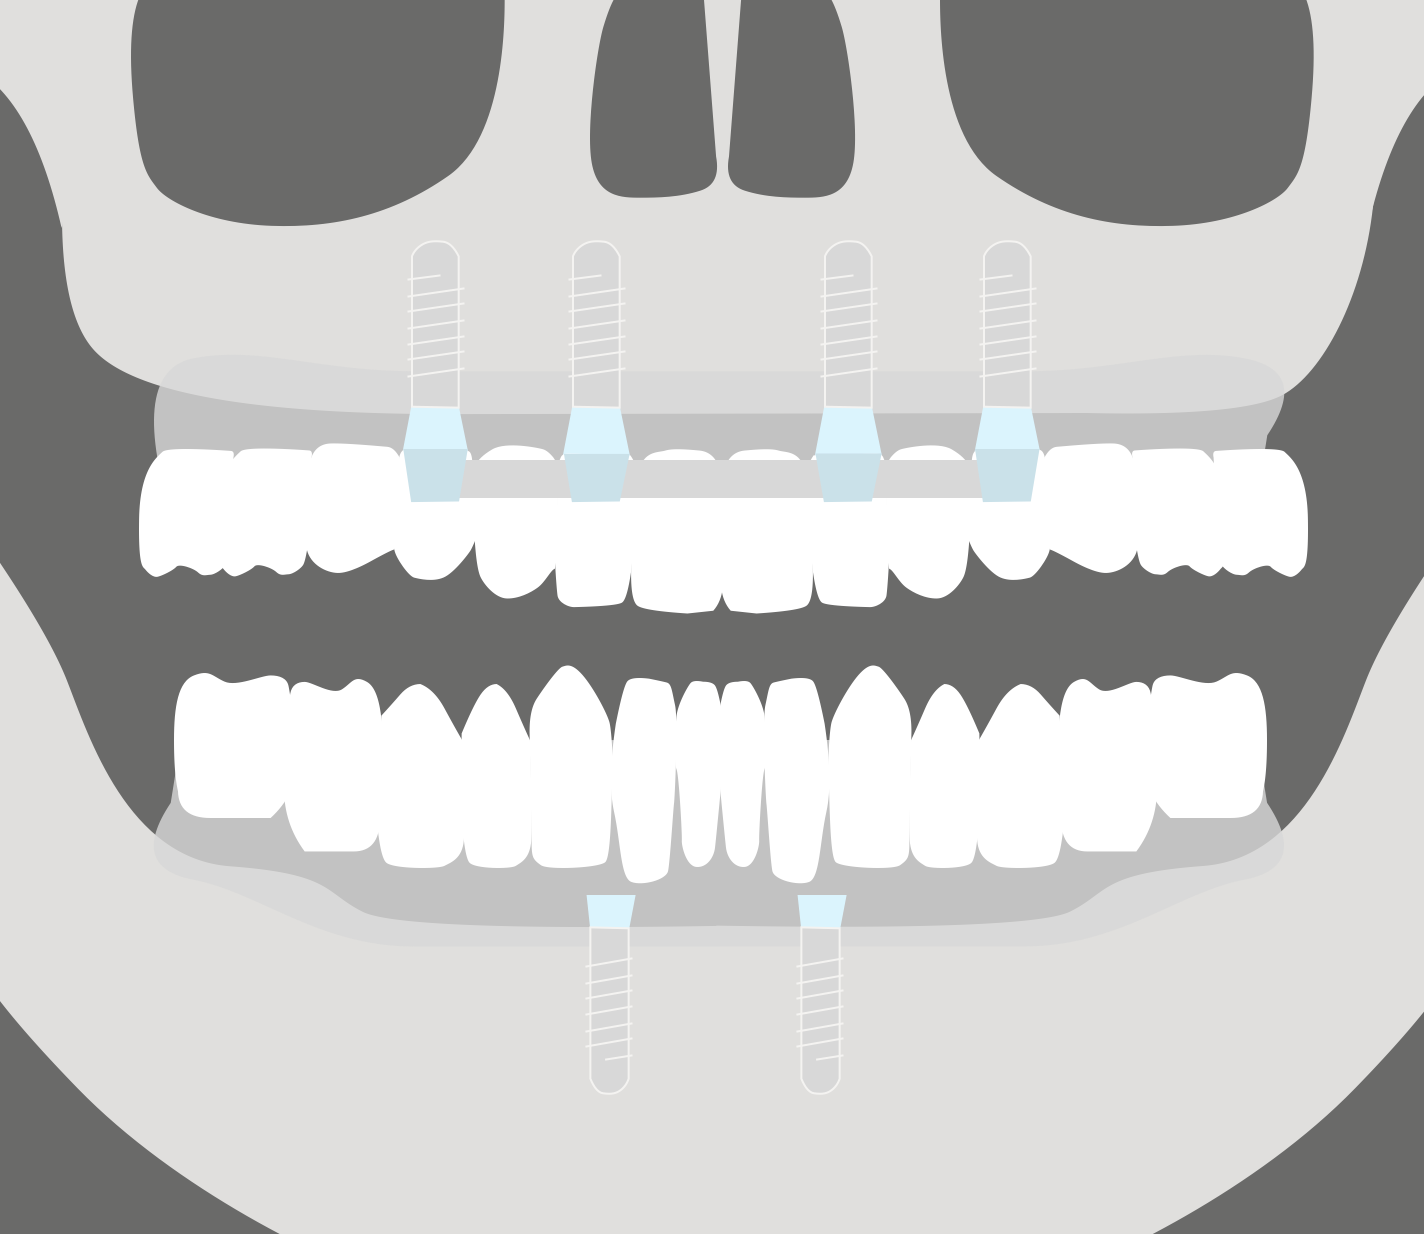 Fijación de la dentadura mediante implantes dentales. Sobredentaduras